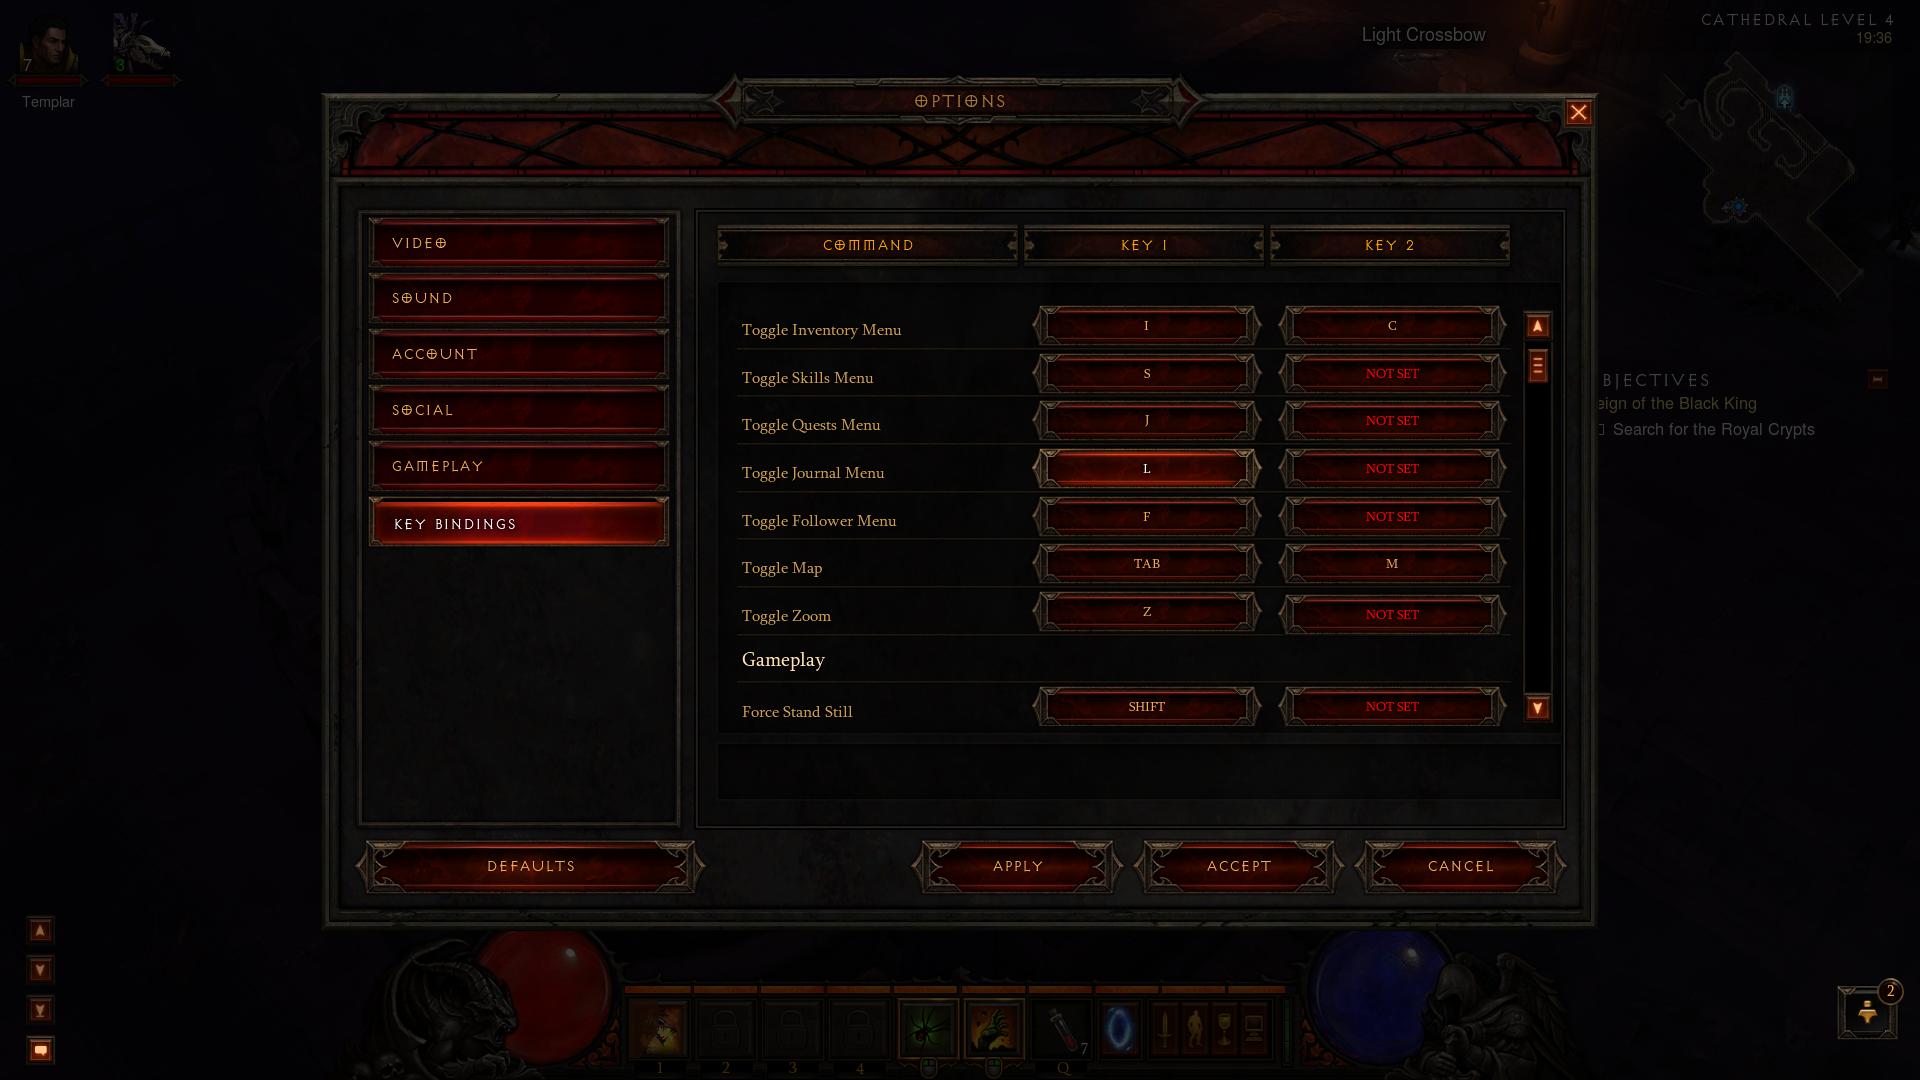 Diablo 3 options d3 screenshot